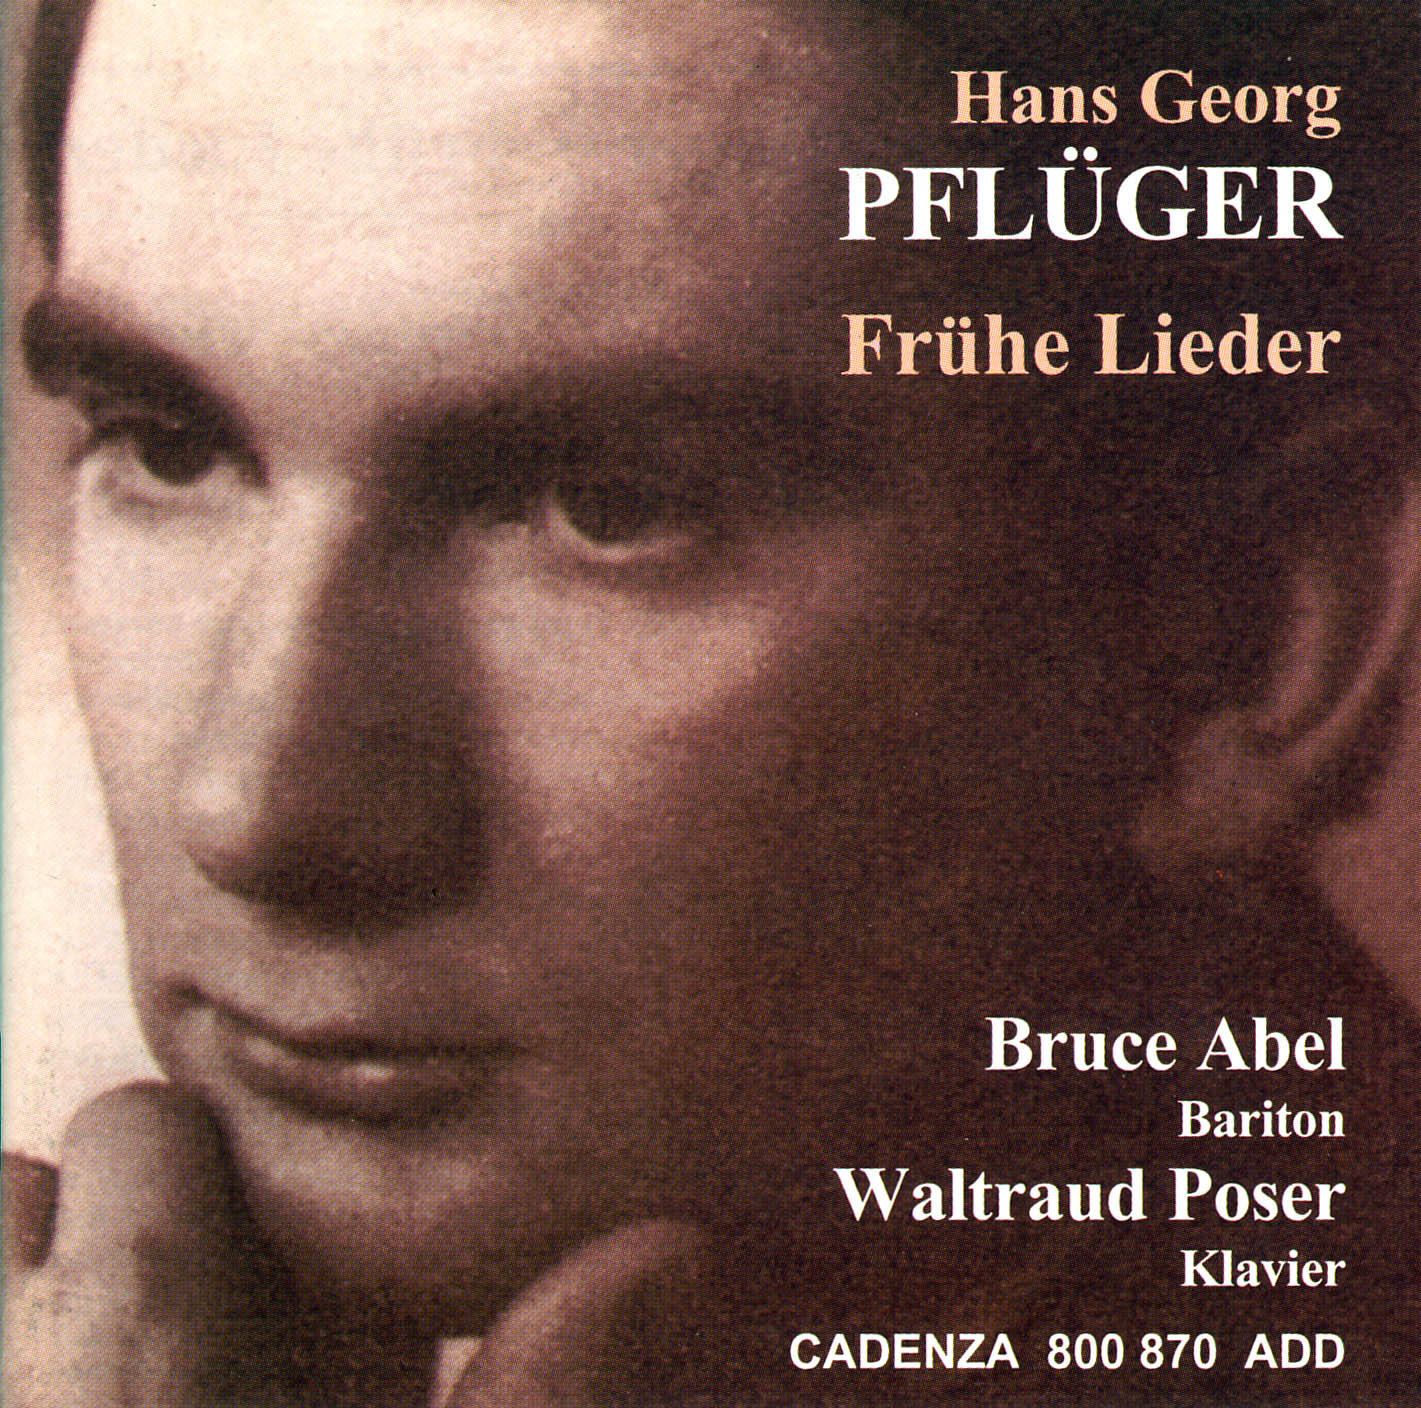 Hans Georg Pflüger - Frühe Lieder